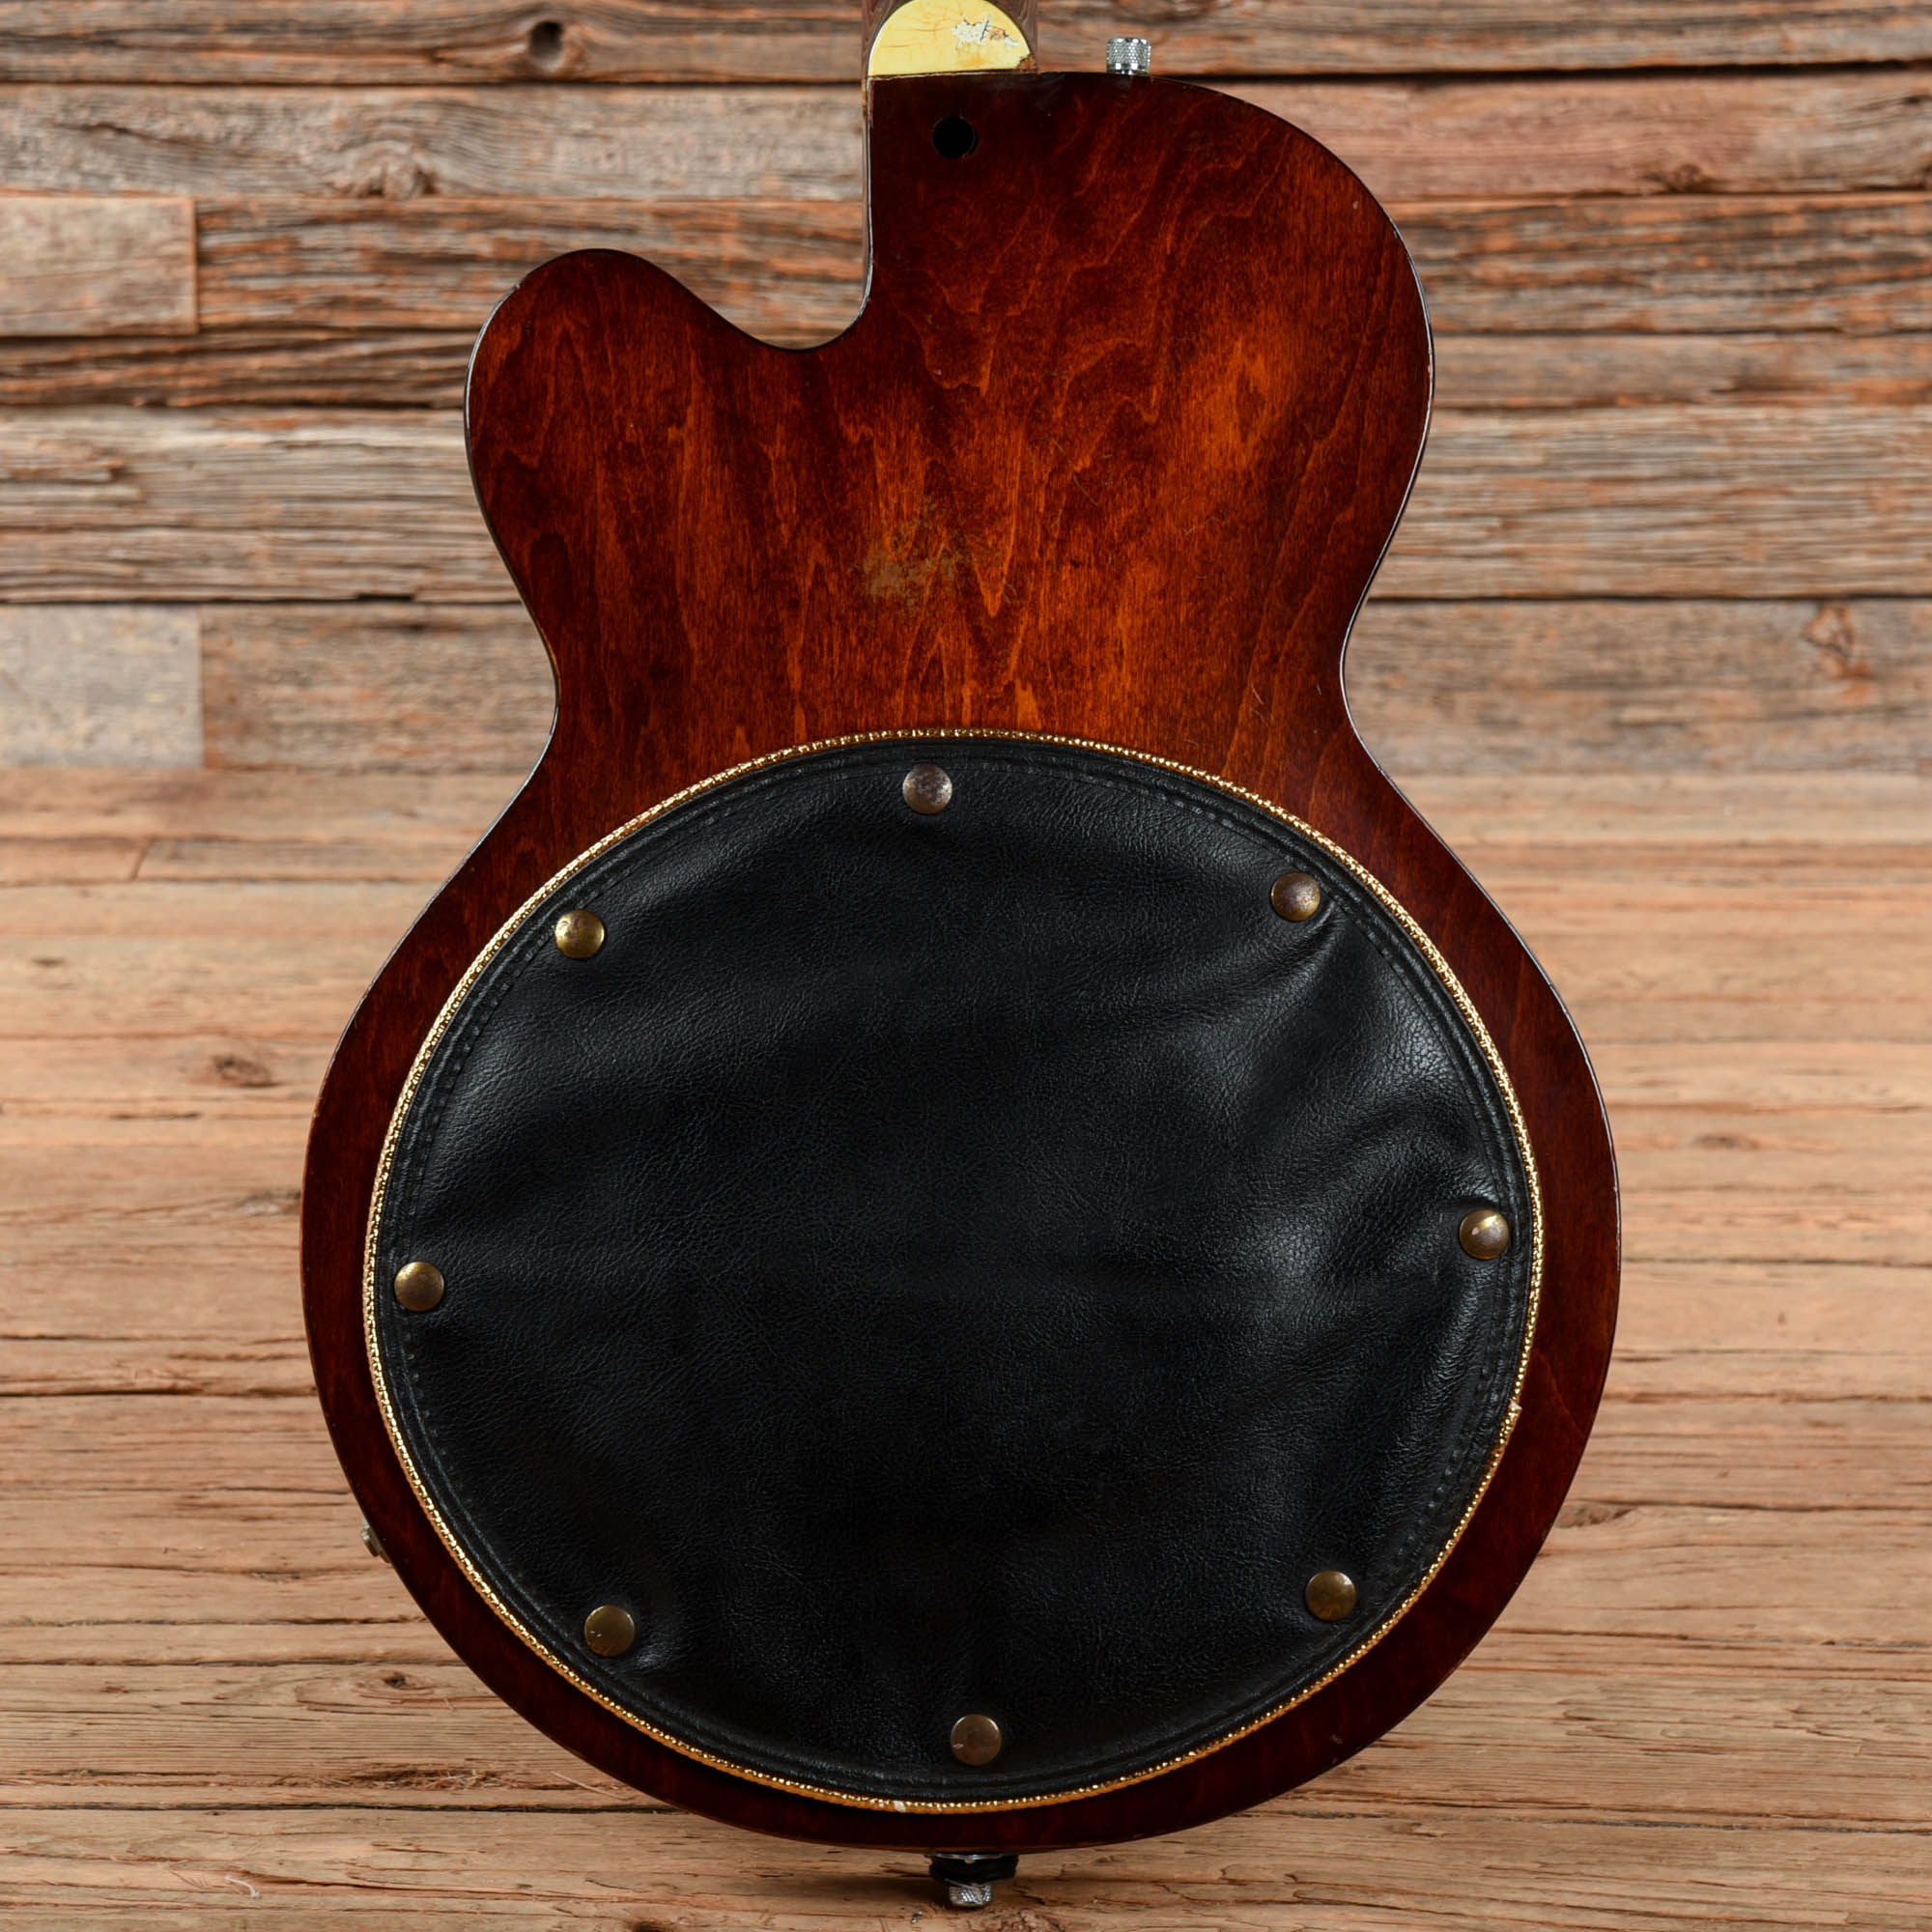 Gretsch 6071 Monkees Bass Walnut 1968 Bass Guitars / 4-String